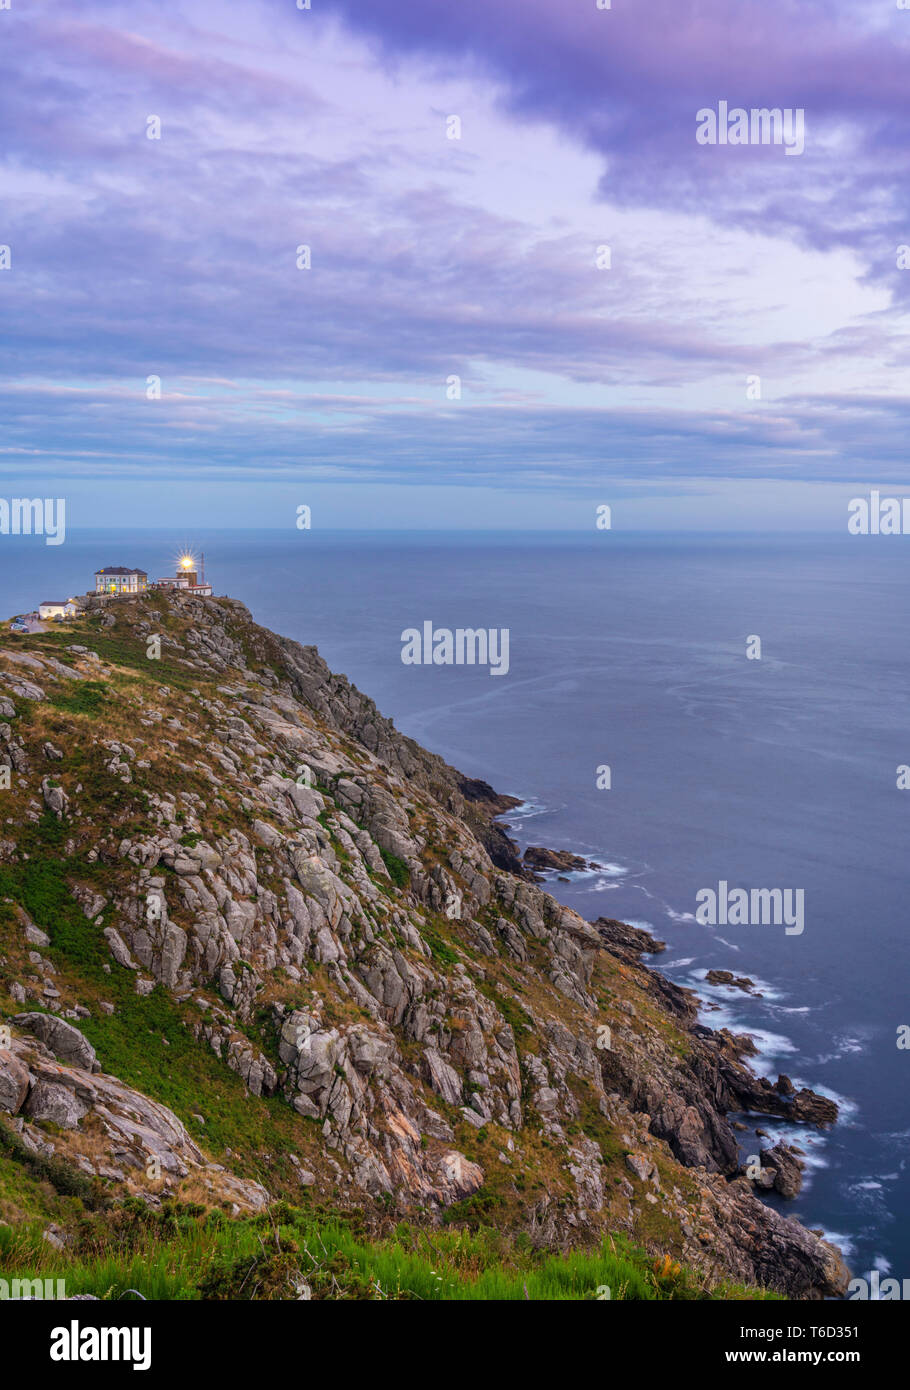 L'Espagne, la Galice, Finisterre Finisterre, phare au crépuscule Banque D'Images